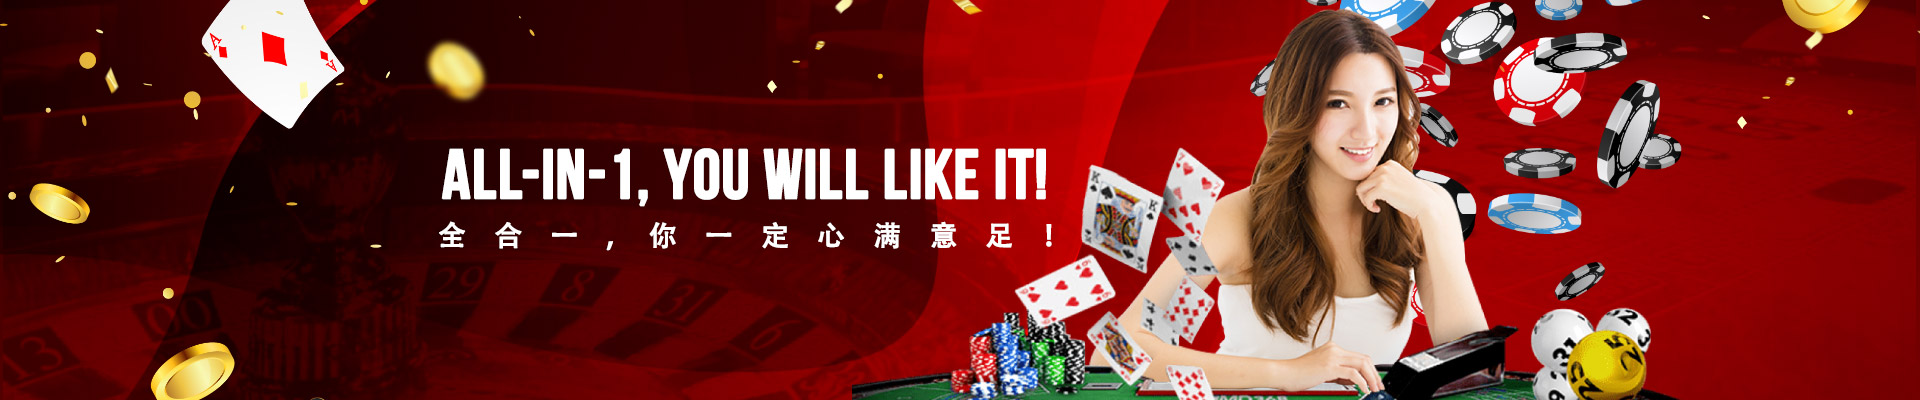 https://ibw2u.com/data/1900/aimg/banner-casino-02.jpg